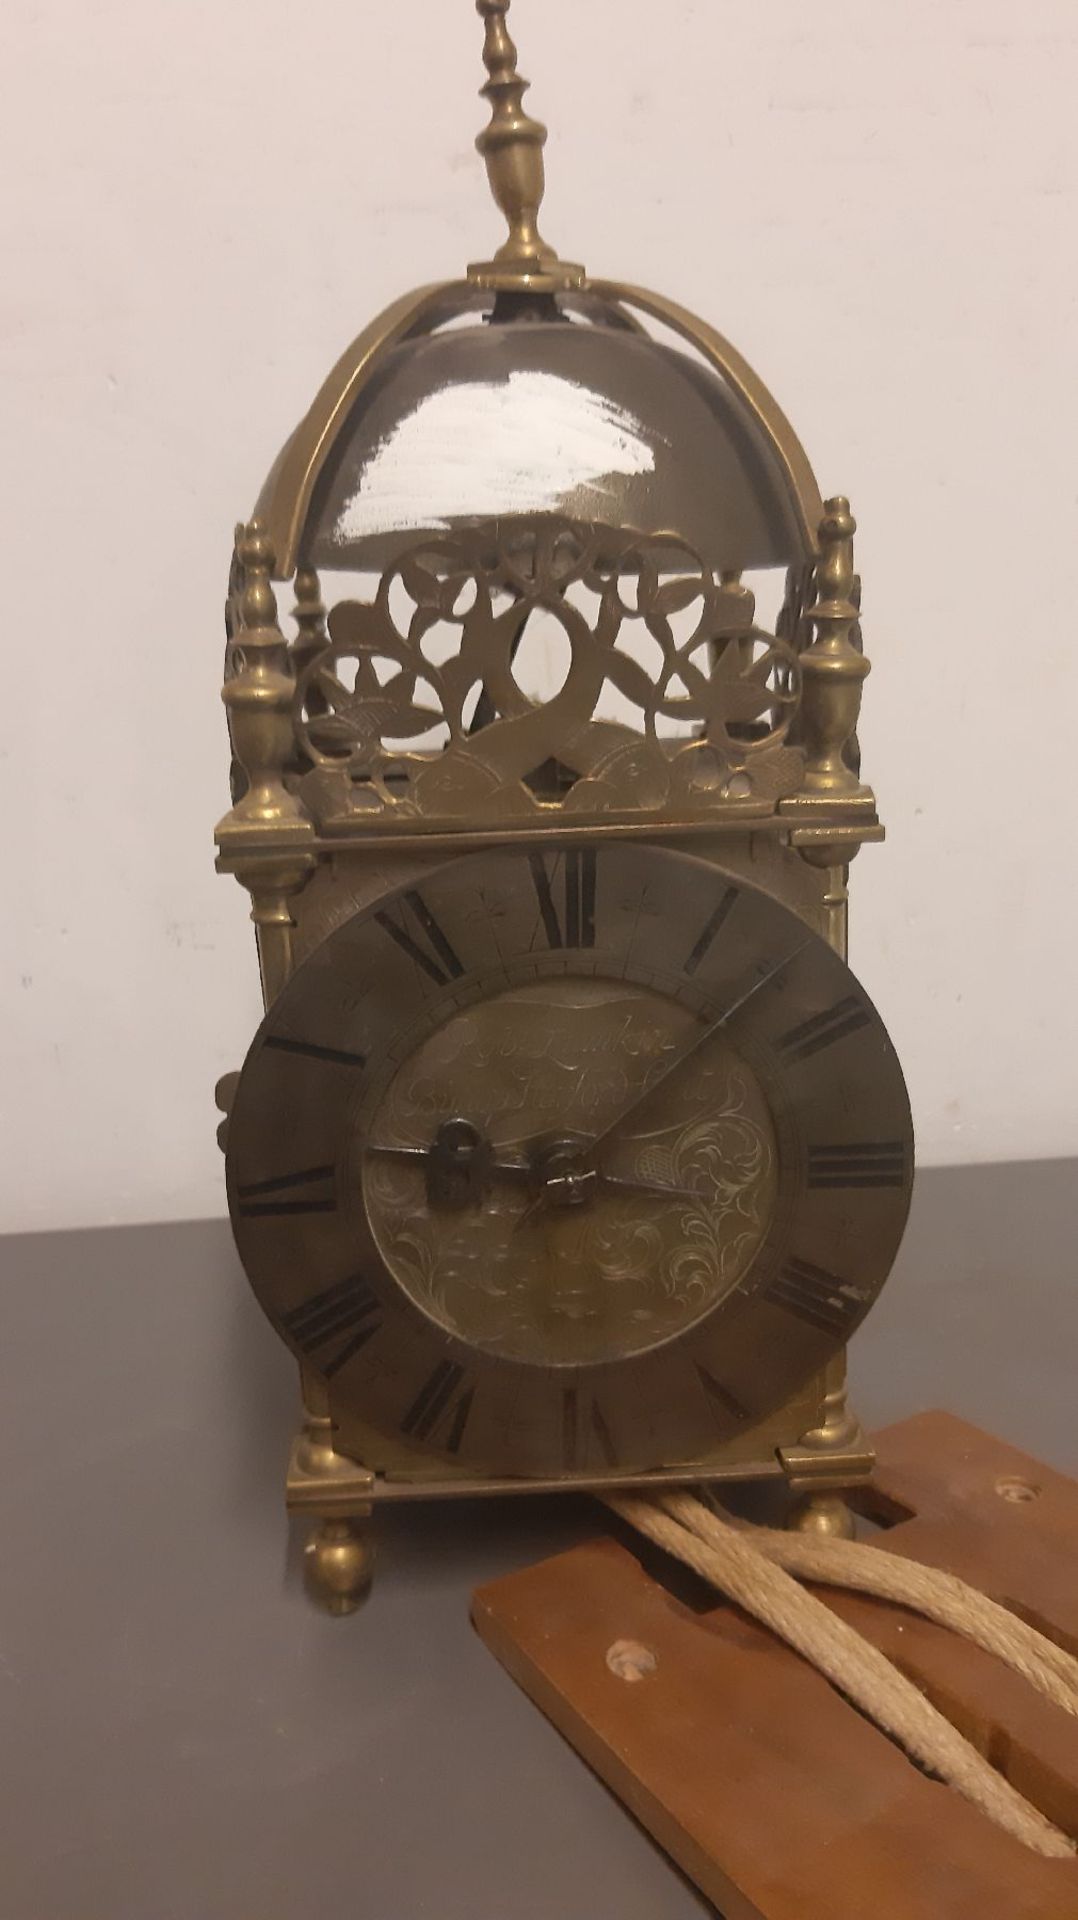 Lantern clock, after 1900, on wooden wall holder, brass housing, dial marked: Robt. Lunkin, Bishog - Bild 2 aus 7